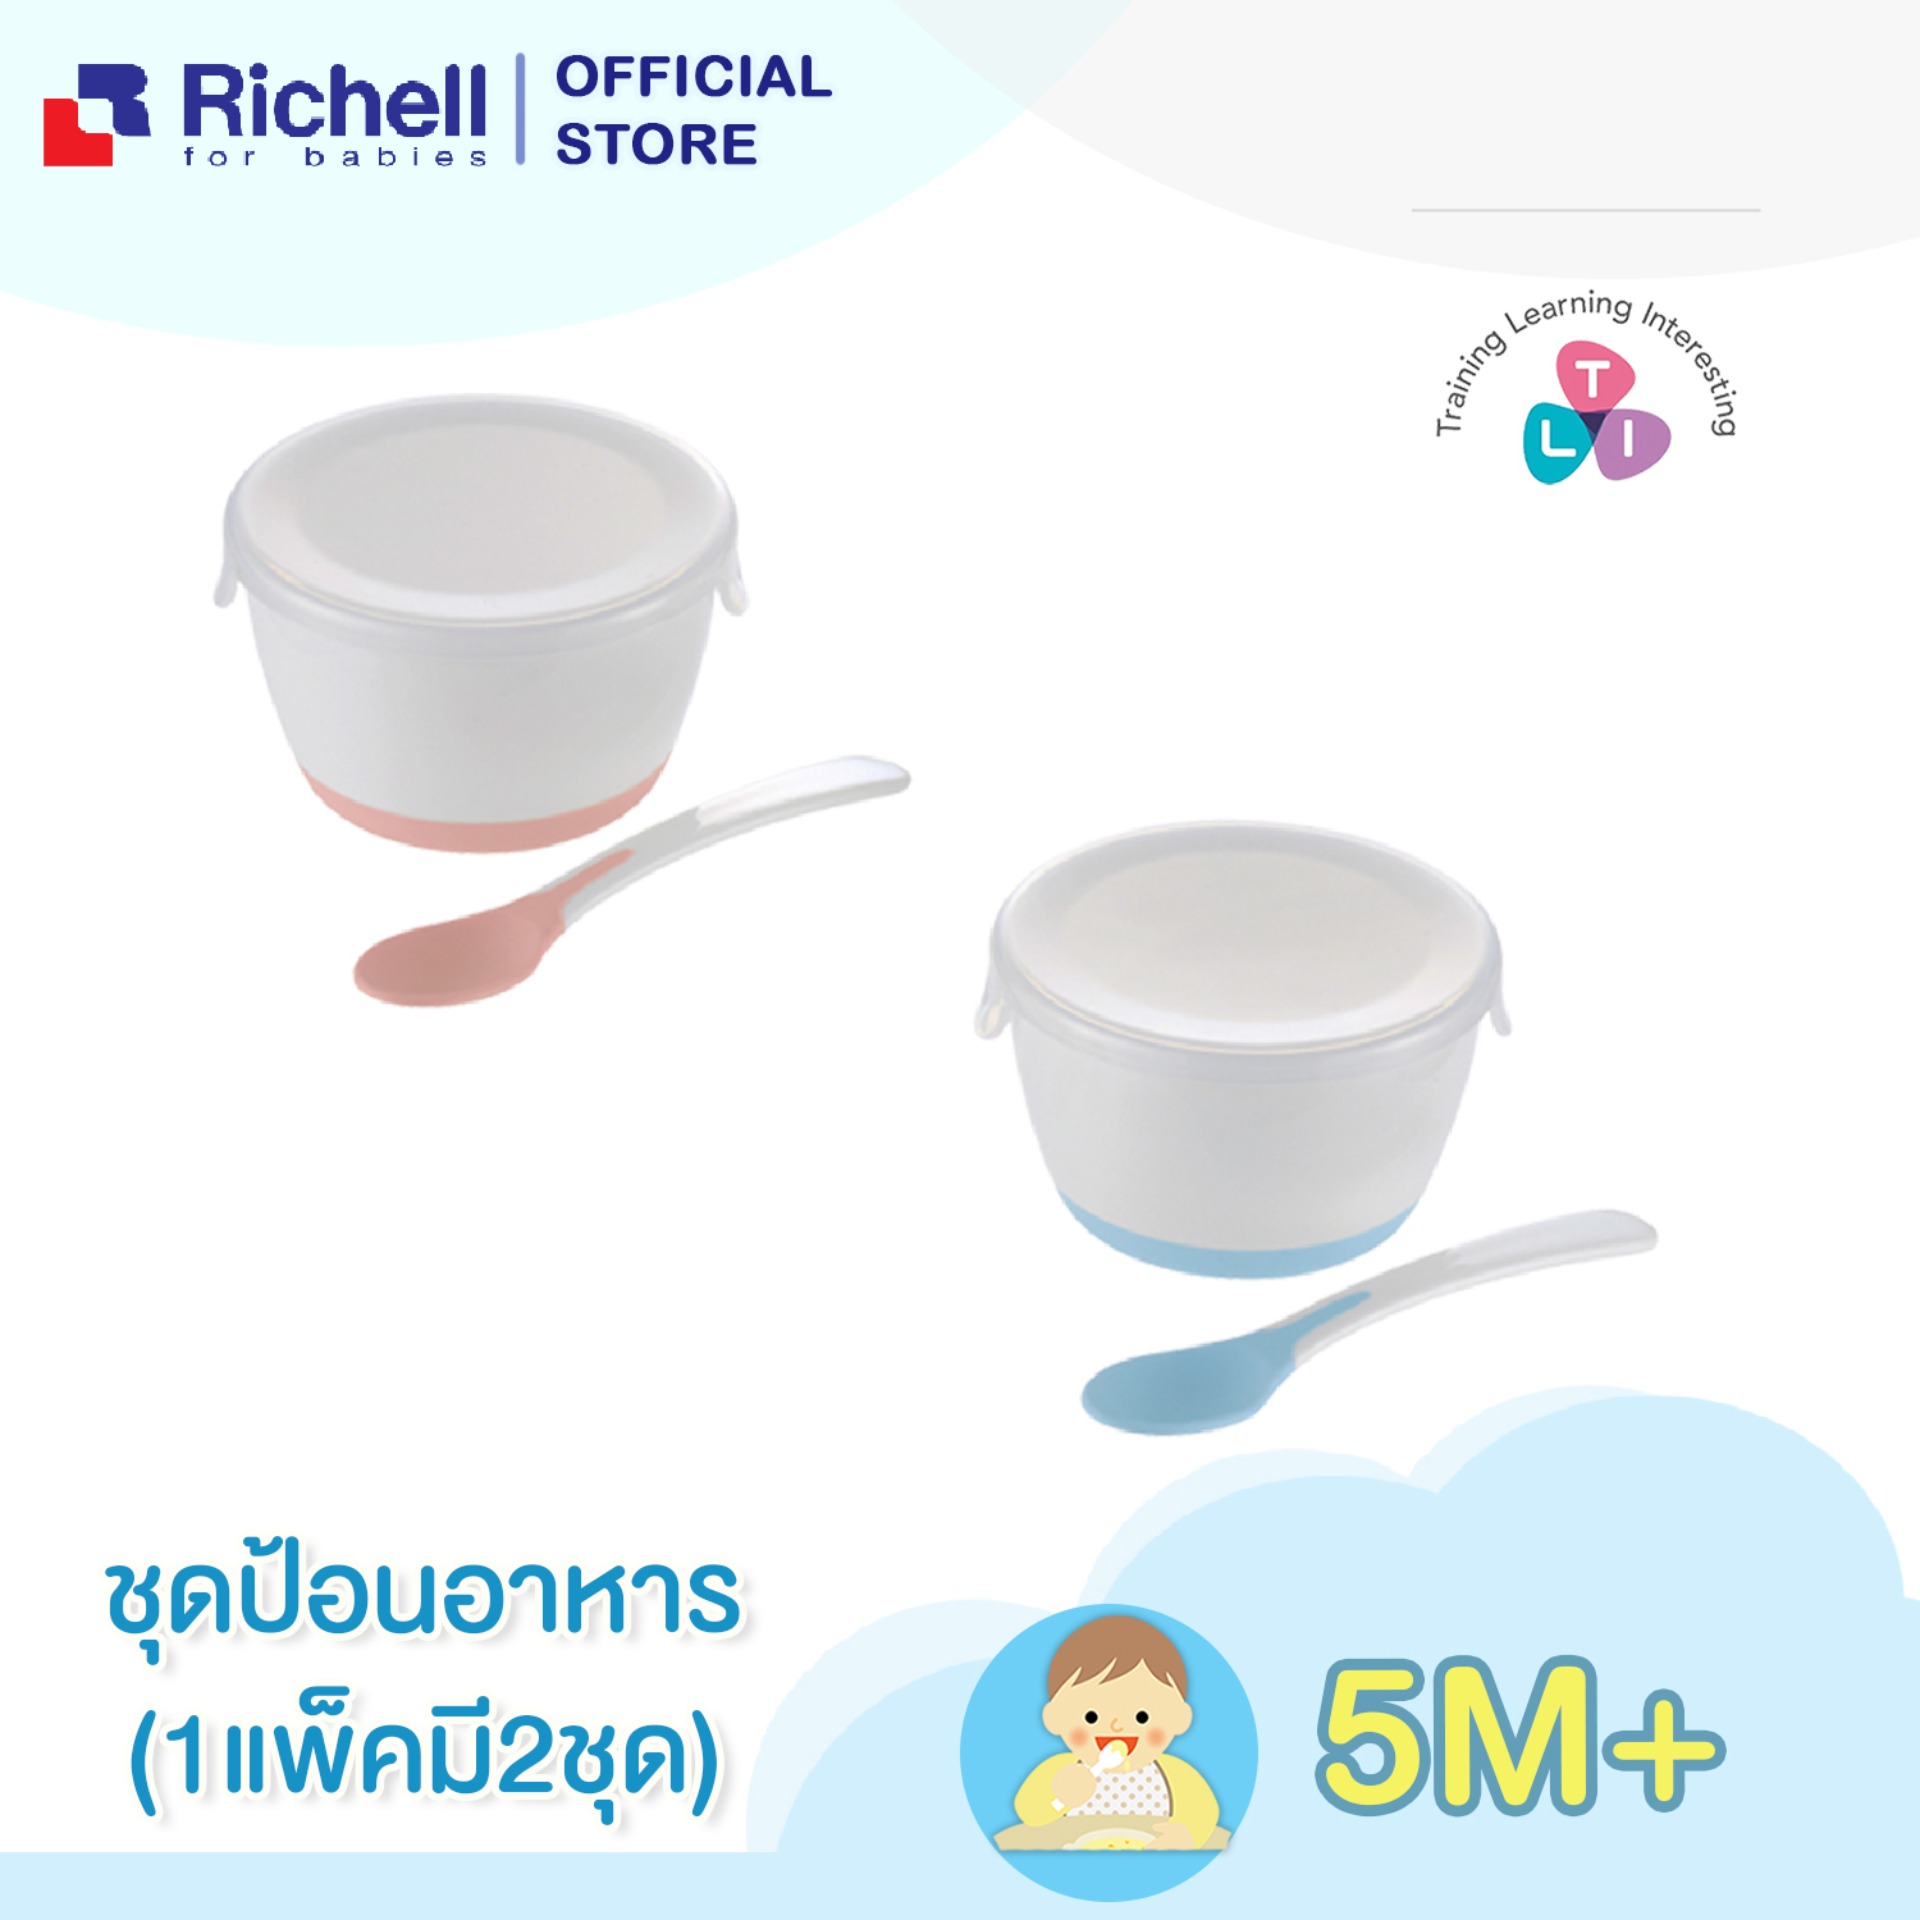 Richell (ริเชล) ชุดชามป้อนอาหารเด็ก ใช้ผสมอาหารได้ในตัว พร้อมช้อนปลายนิ่ม เหมาะสำหรับเด็กวัย 4 เดือนขึ้นไป